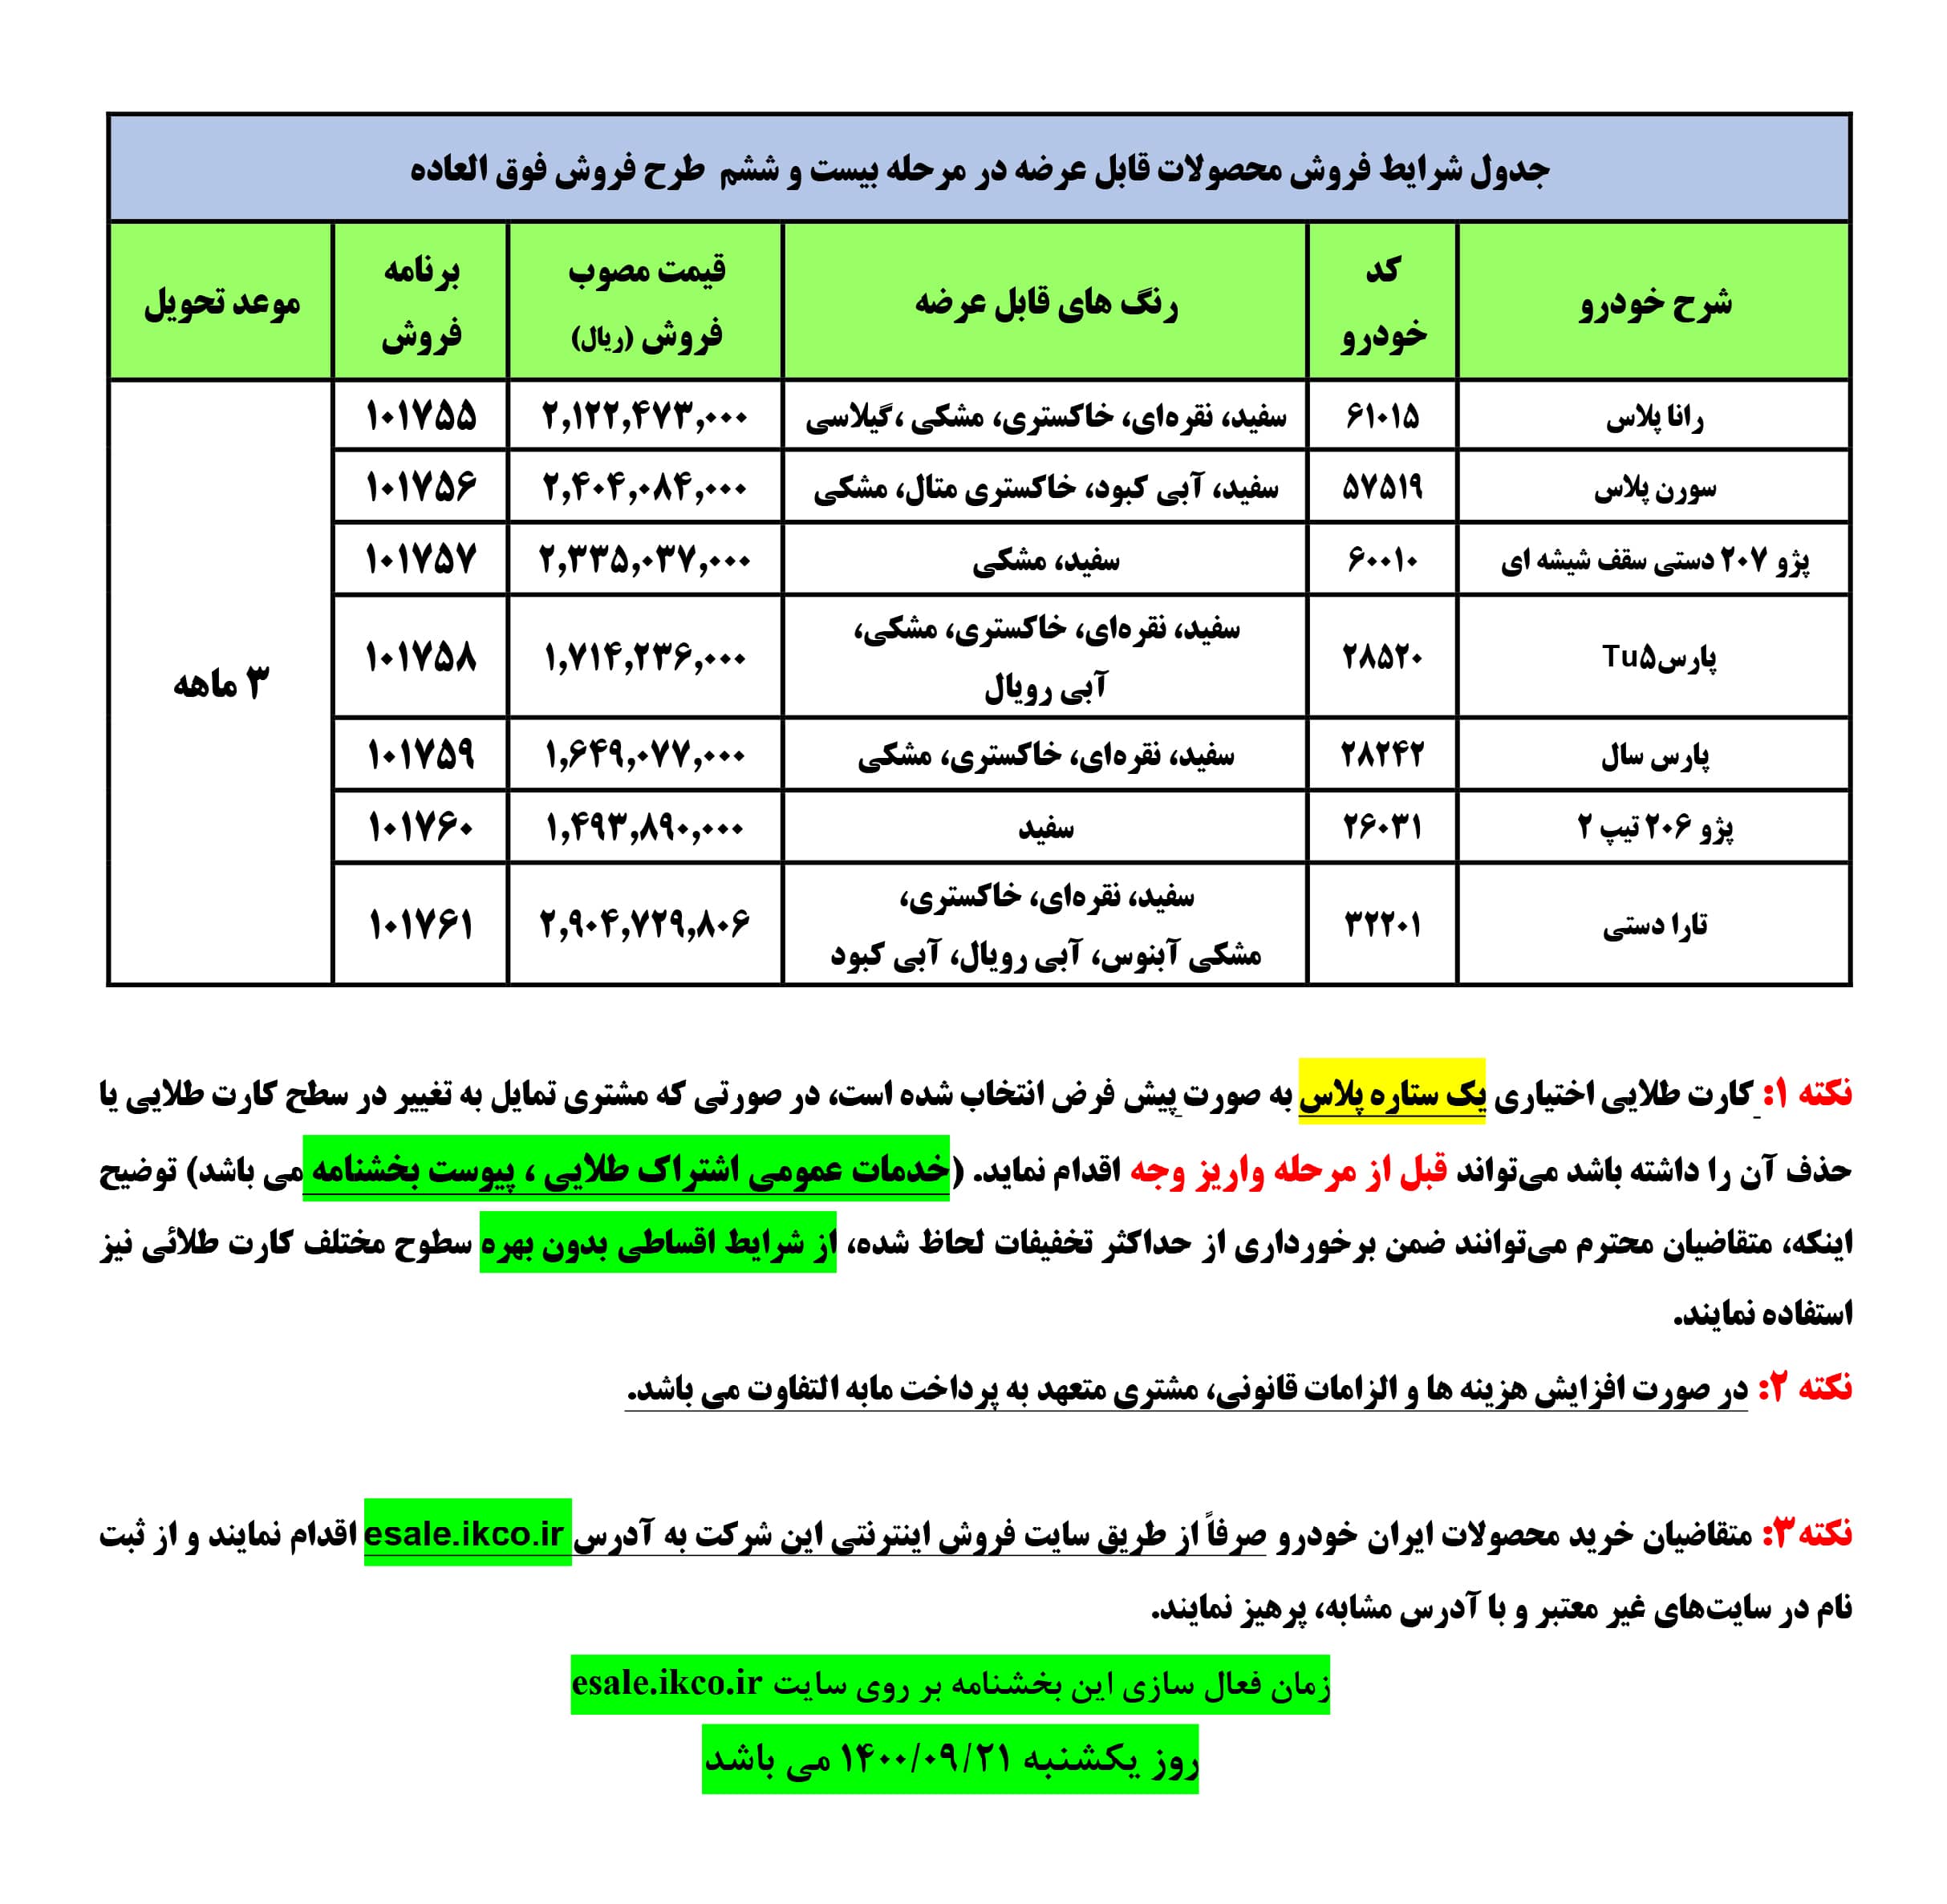 بخشنامه فروش فوق العاده ایران خودرو ۲۱ آذر ۱۴۰۰